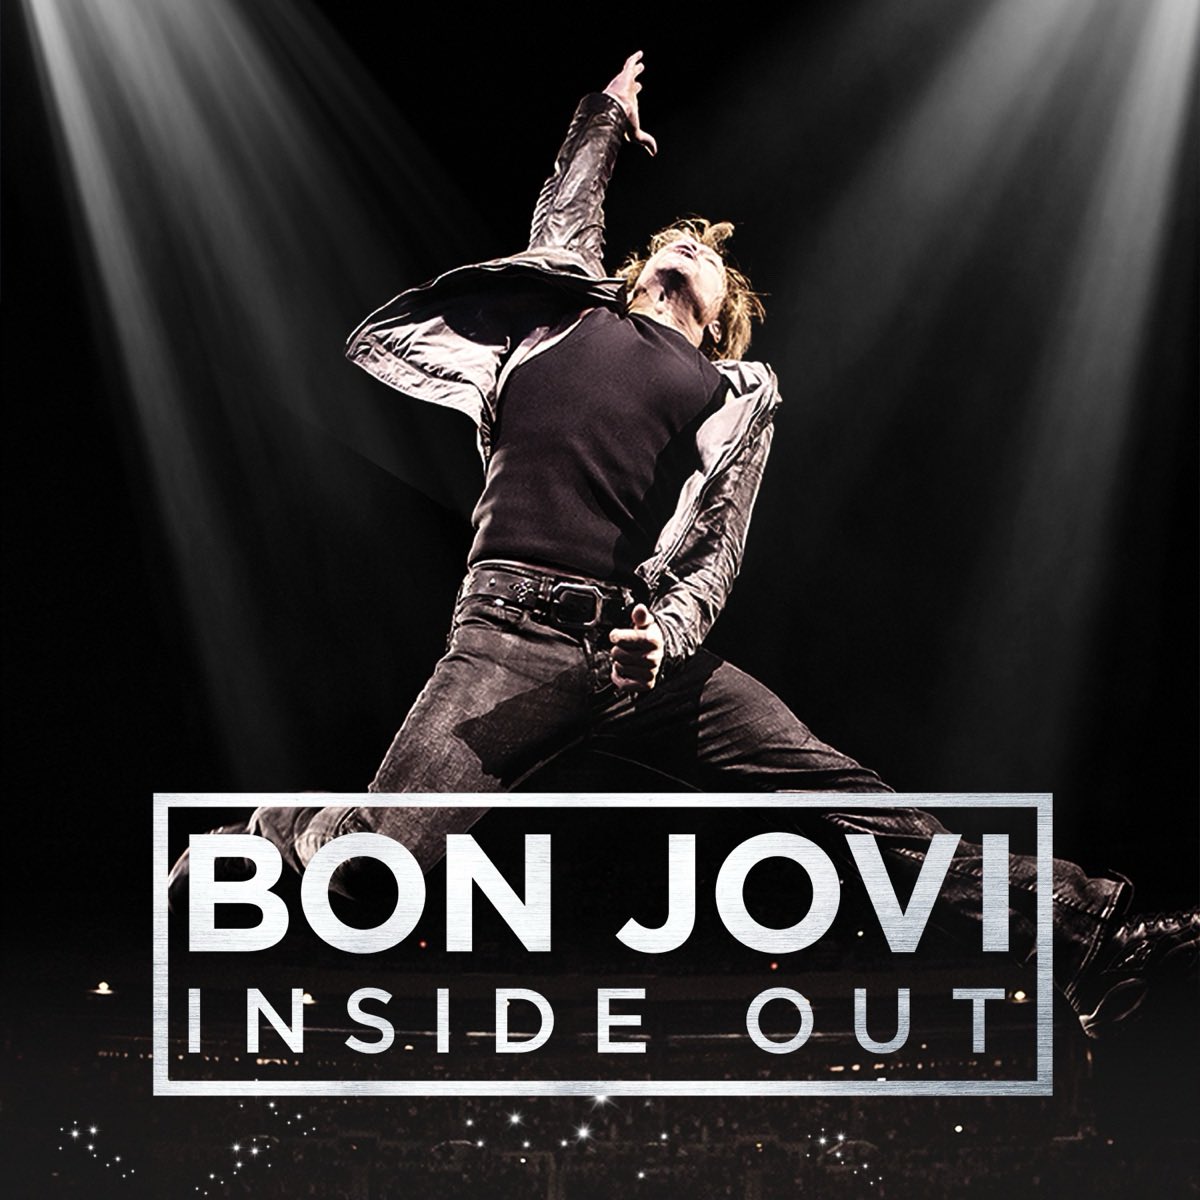 #mondaymusic #trackofmylifeLivin' On a Prayer by Bon Jovi